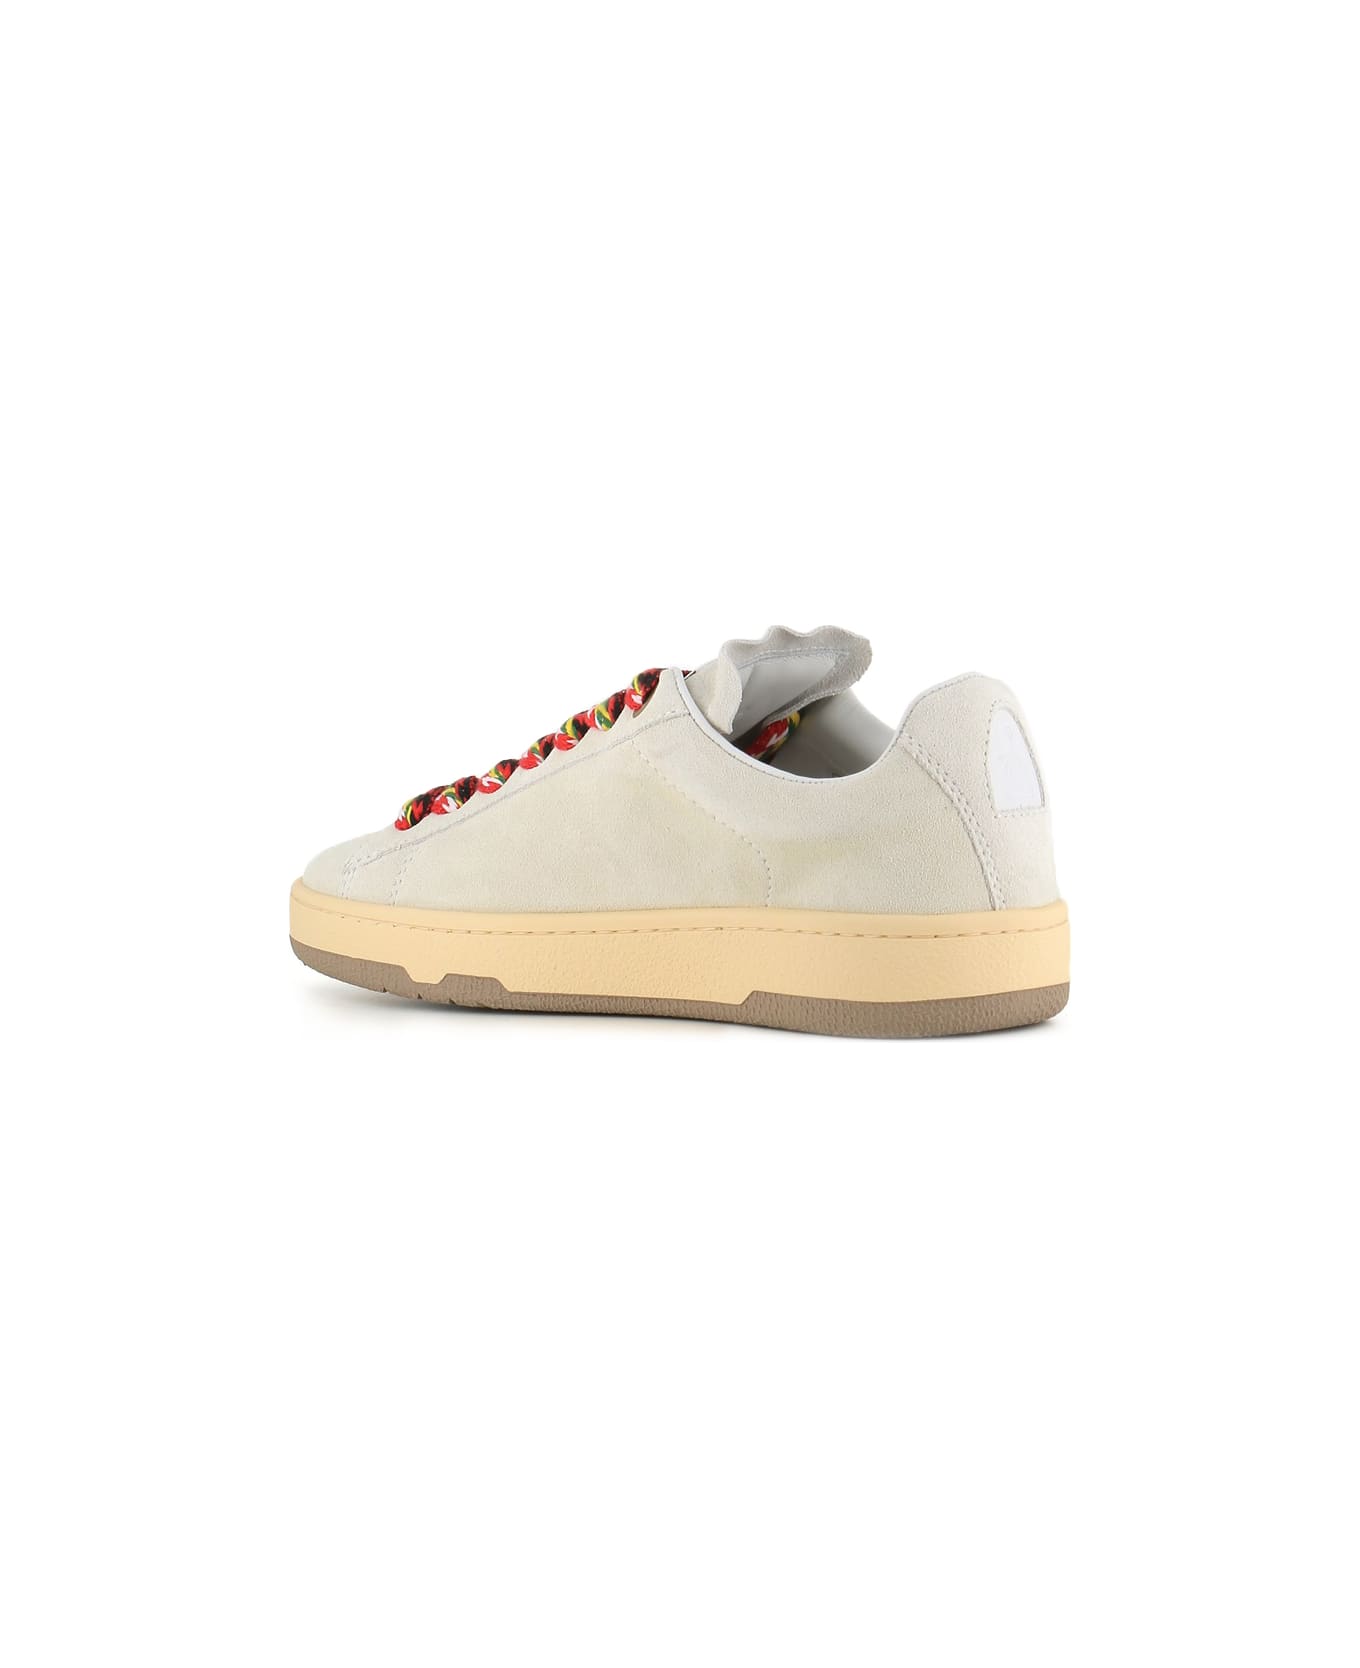 Lanvin Sneaker Curb Lite - White/multicolor